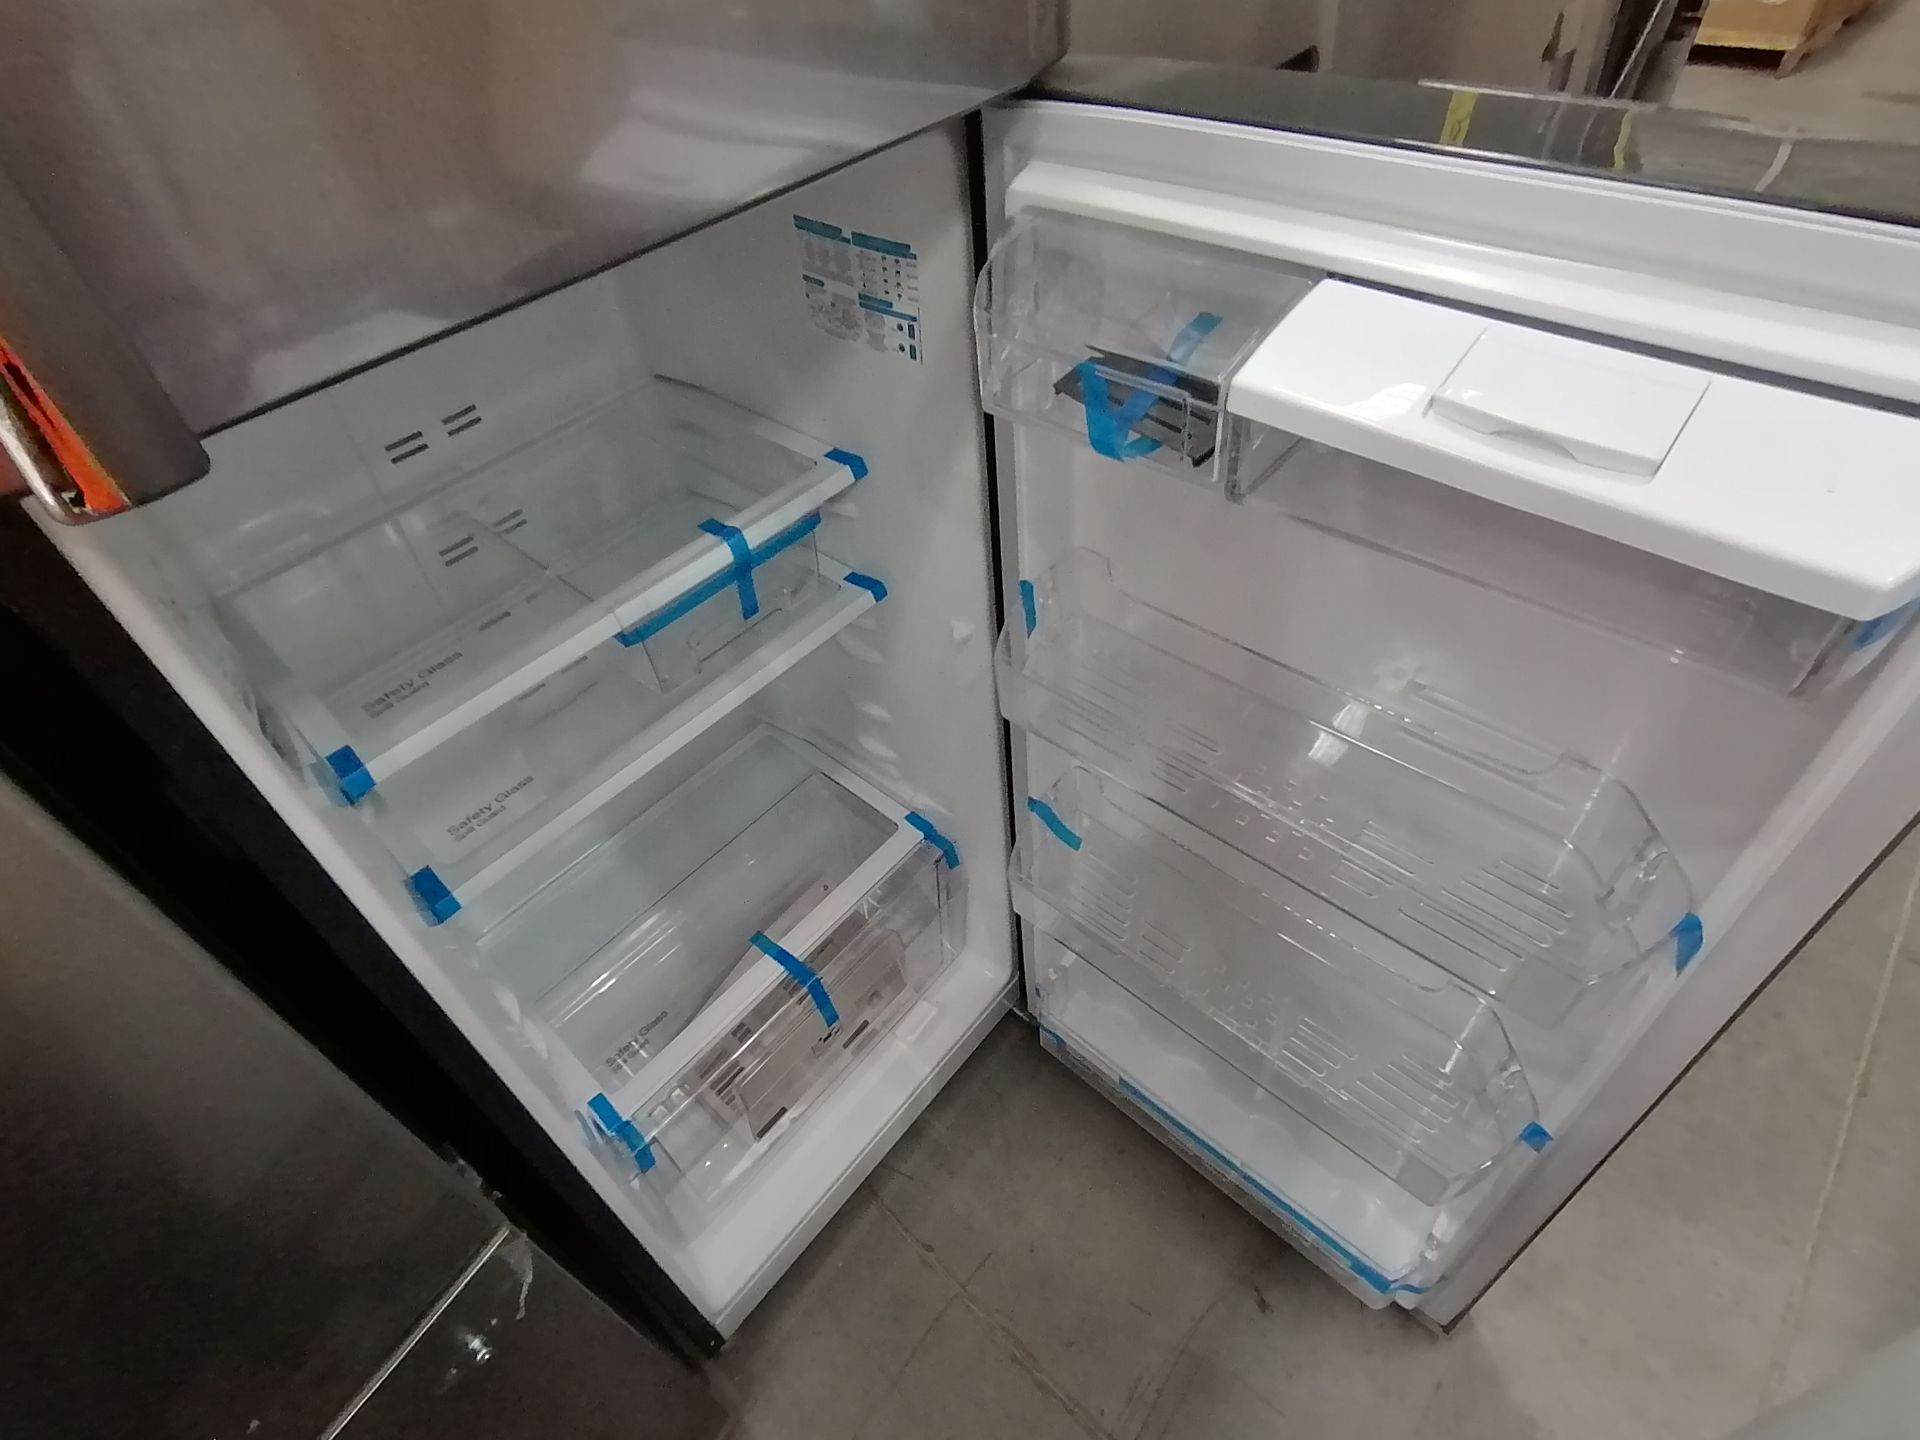 1 Refrigerador Marca Samsung, Modelo rf220fctas8, Serie BBR100057N, Color Gris, Golpeado, Favor de - Image 11 of 16